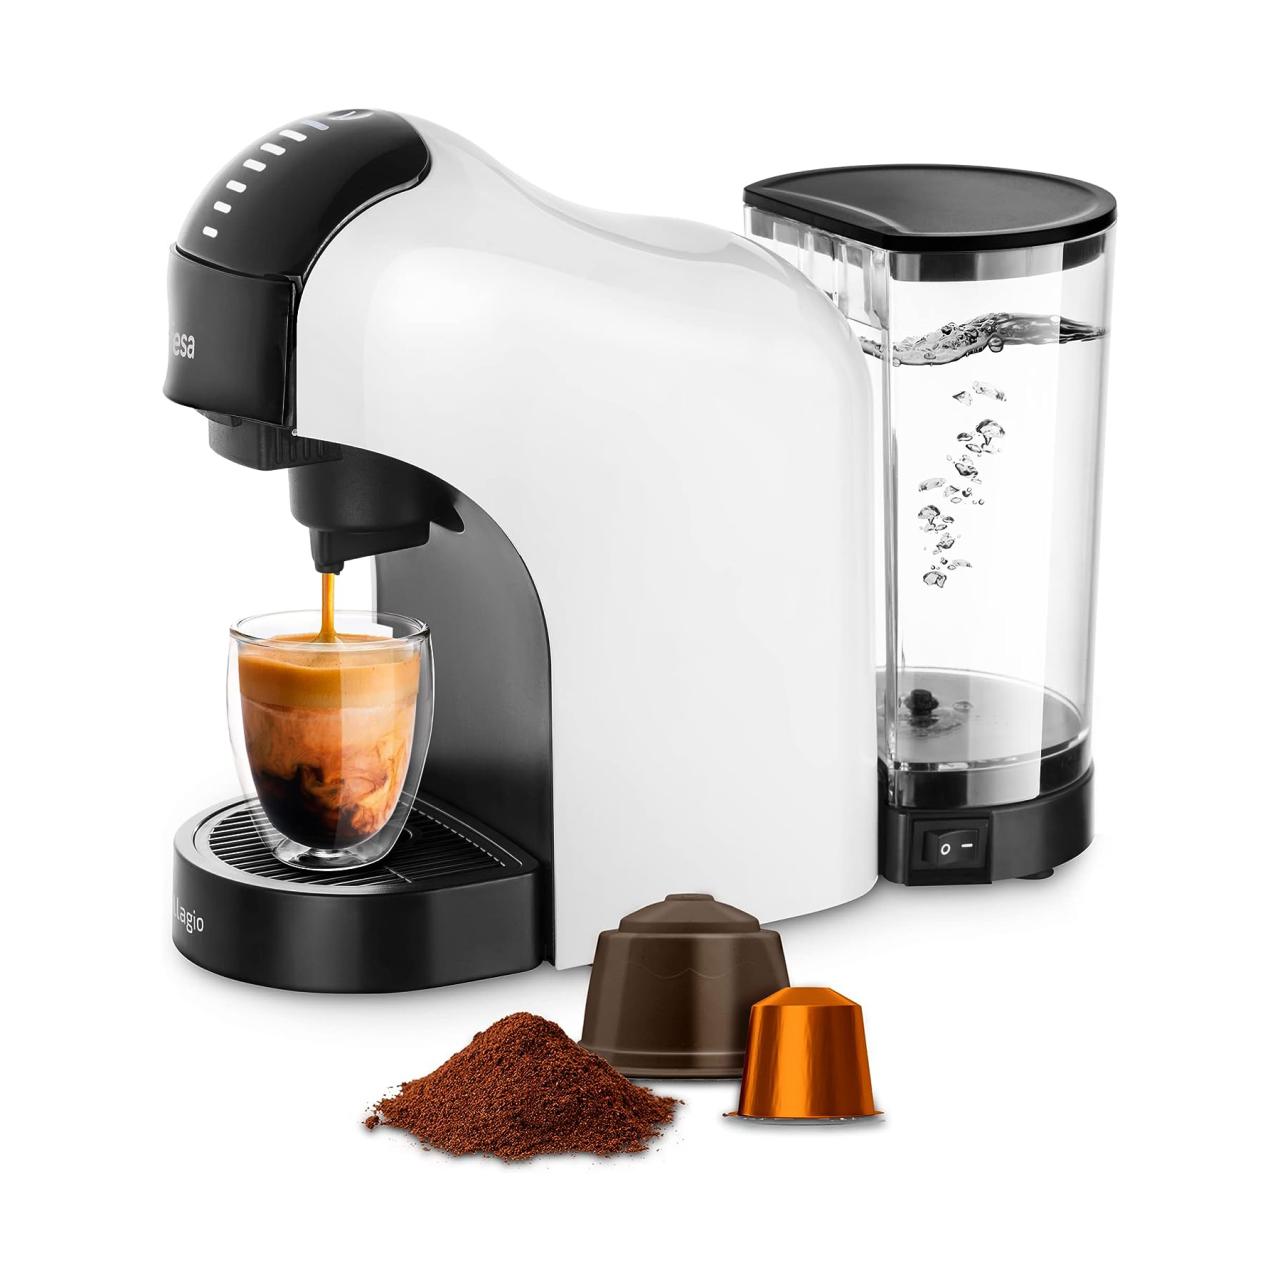 Cafetera multi-cápsula 3 en 1. Dolce Gusto®, Nespresso® y café molido.